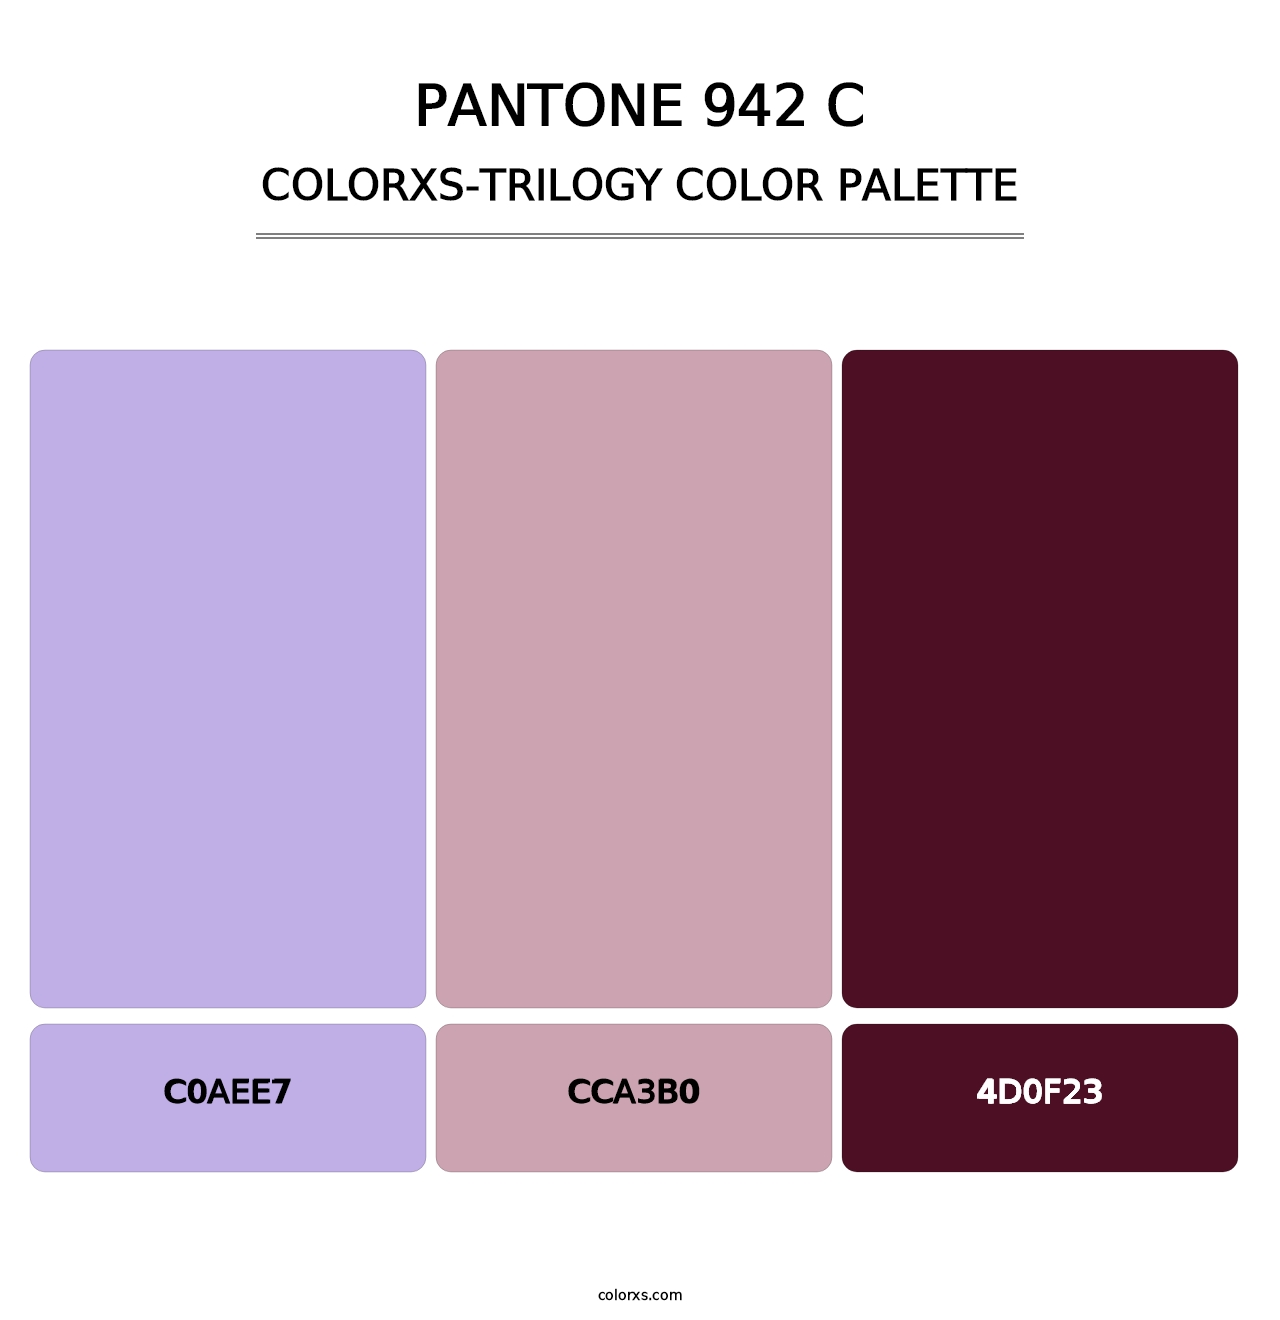 PANTONE 942 C - Colorxs Trilogy Palette